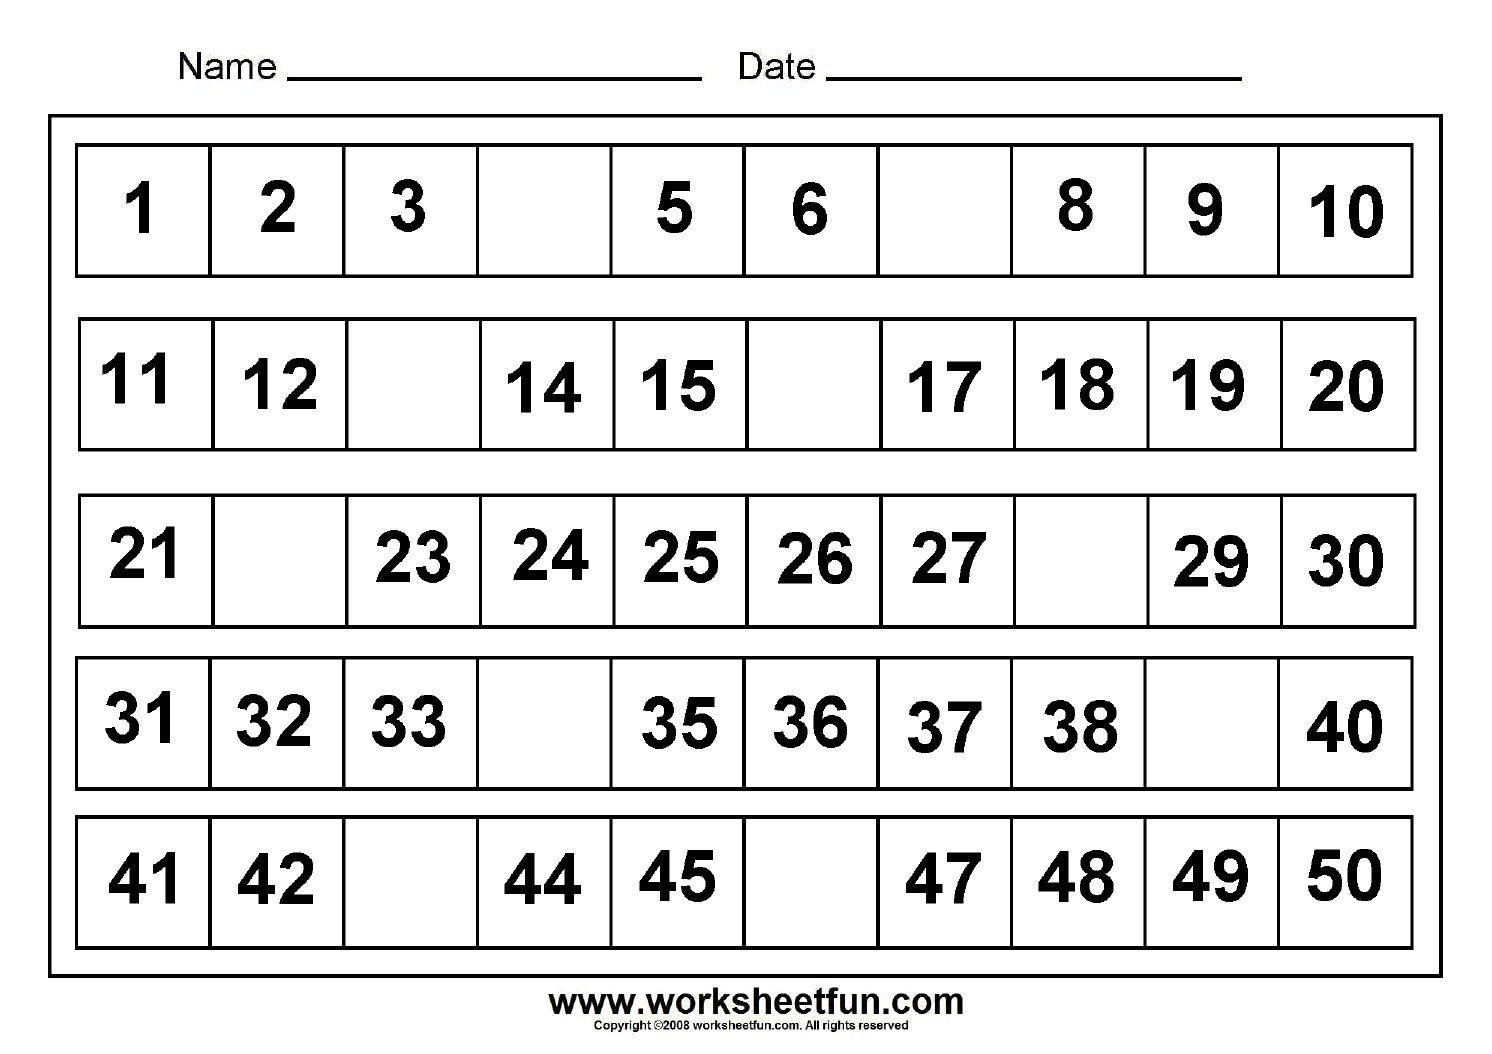 13-printable-missing-numbers-worksheets-1-30-worksheeto